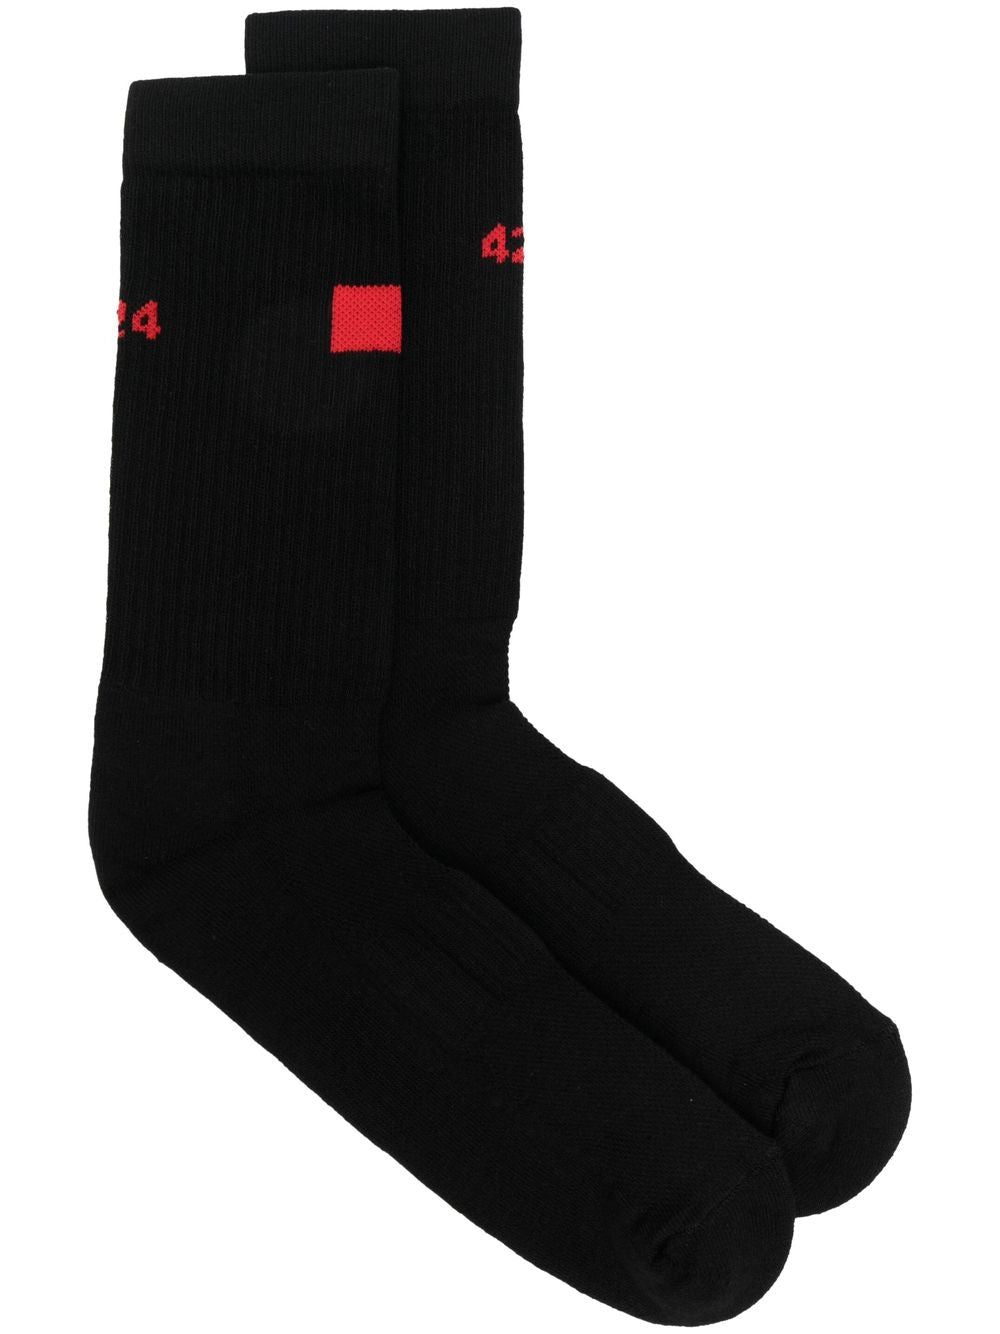 Intarsia-logo socks from 424